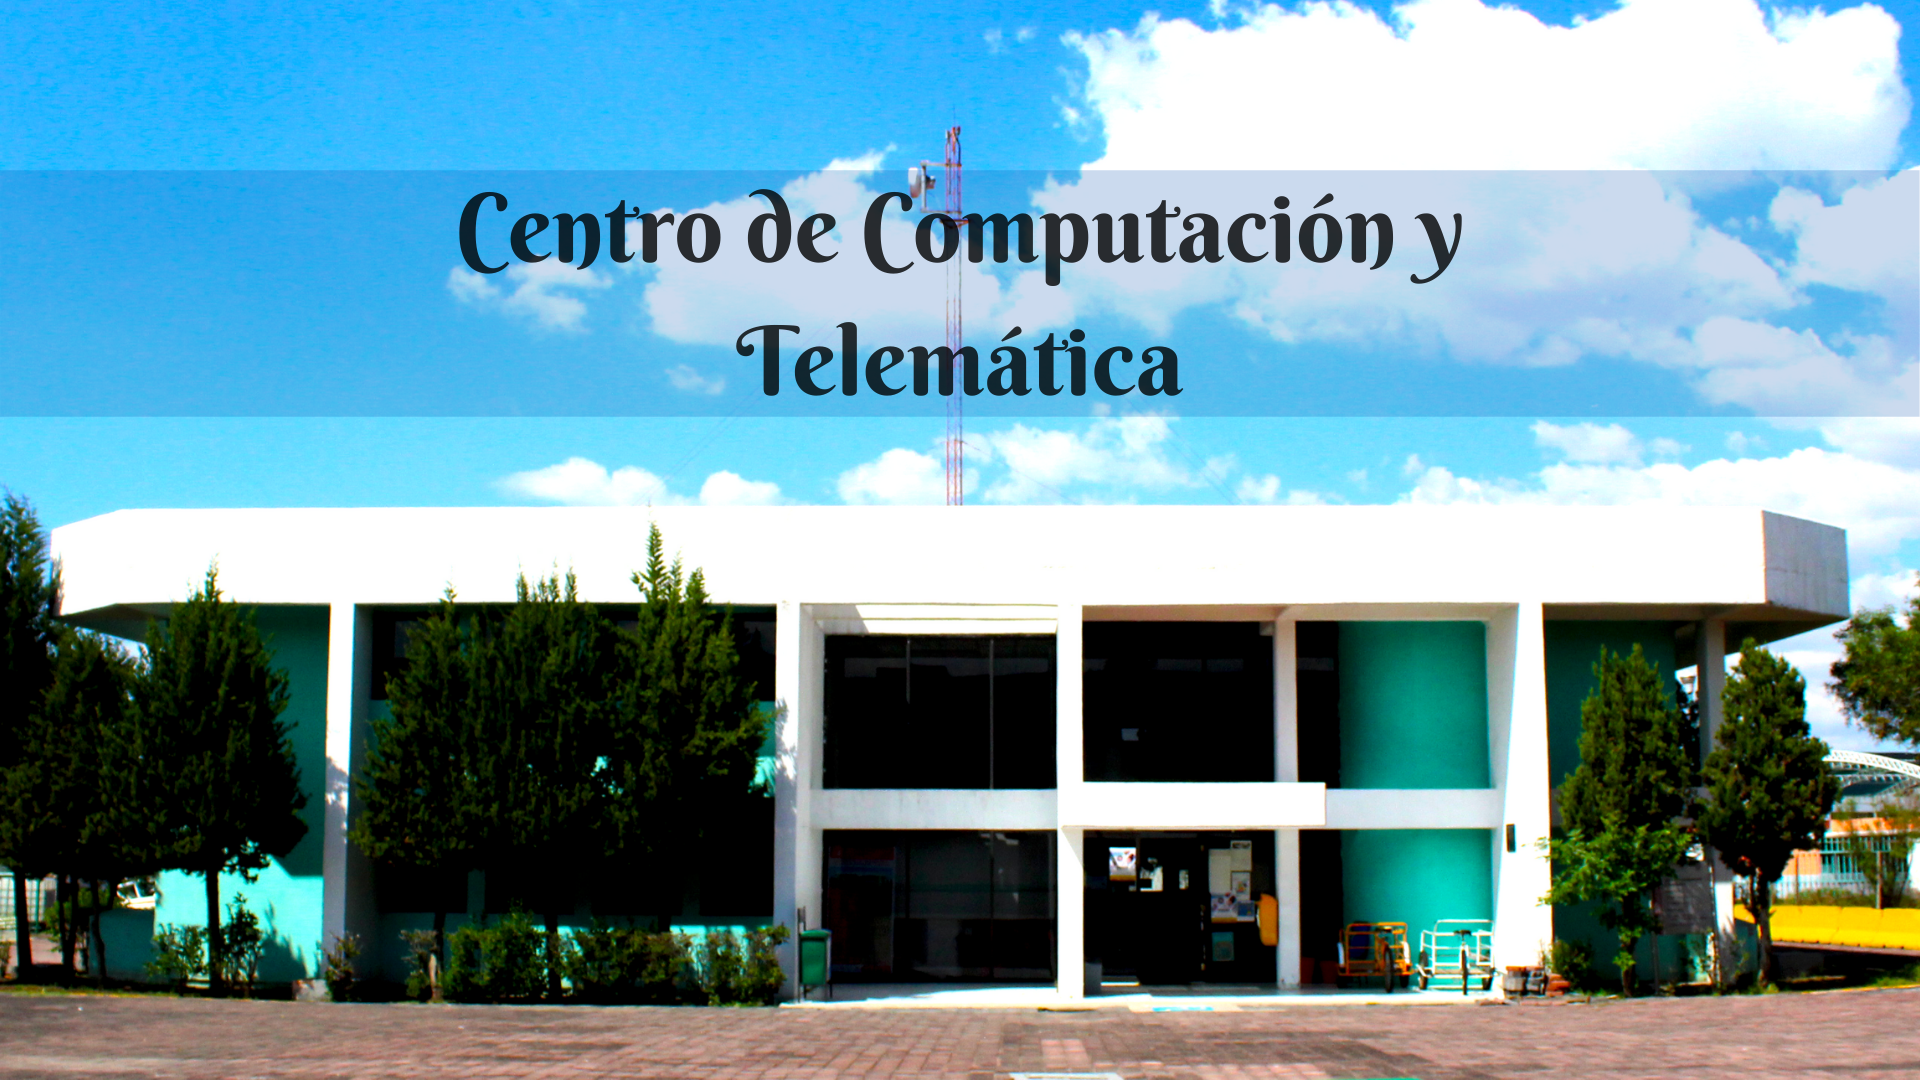 Centro de Computación y Telemática